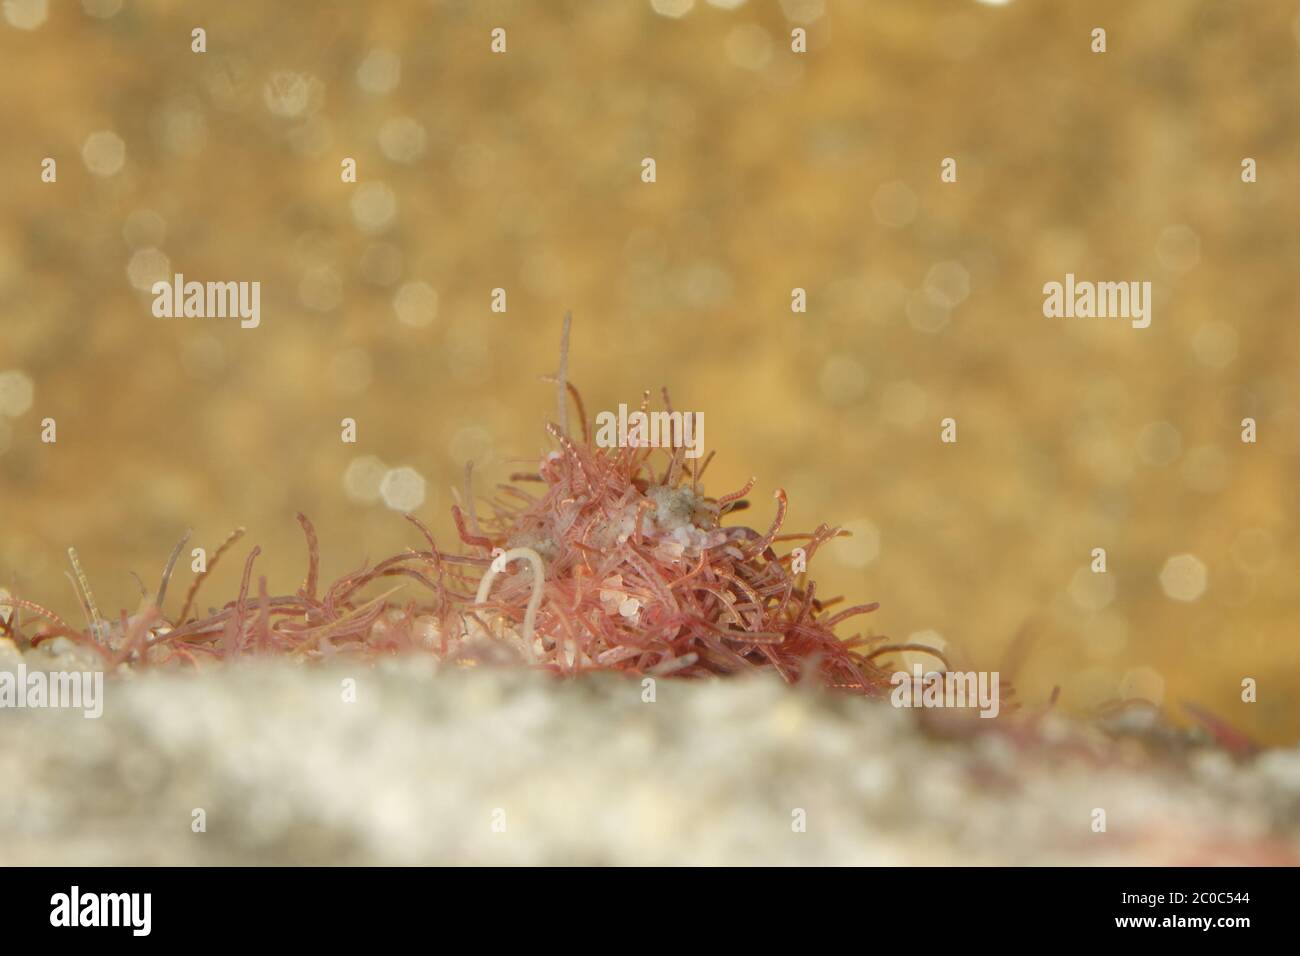 Tubifex worms Stock Photo